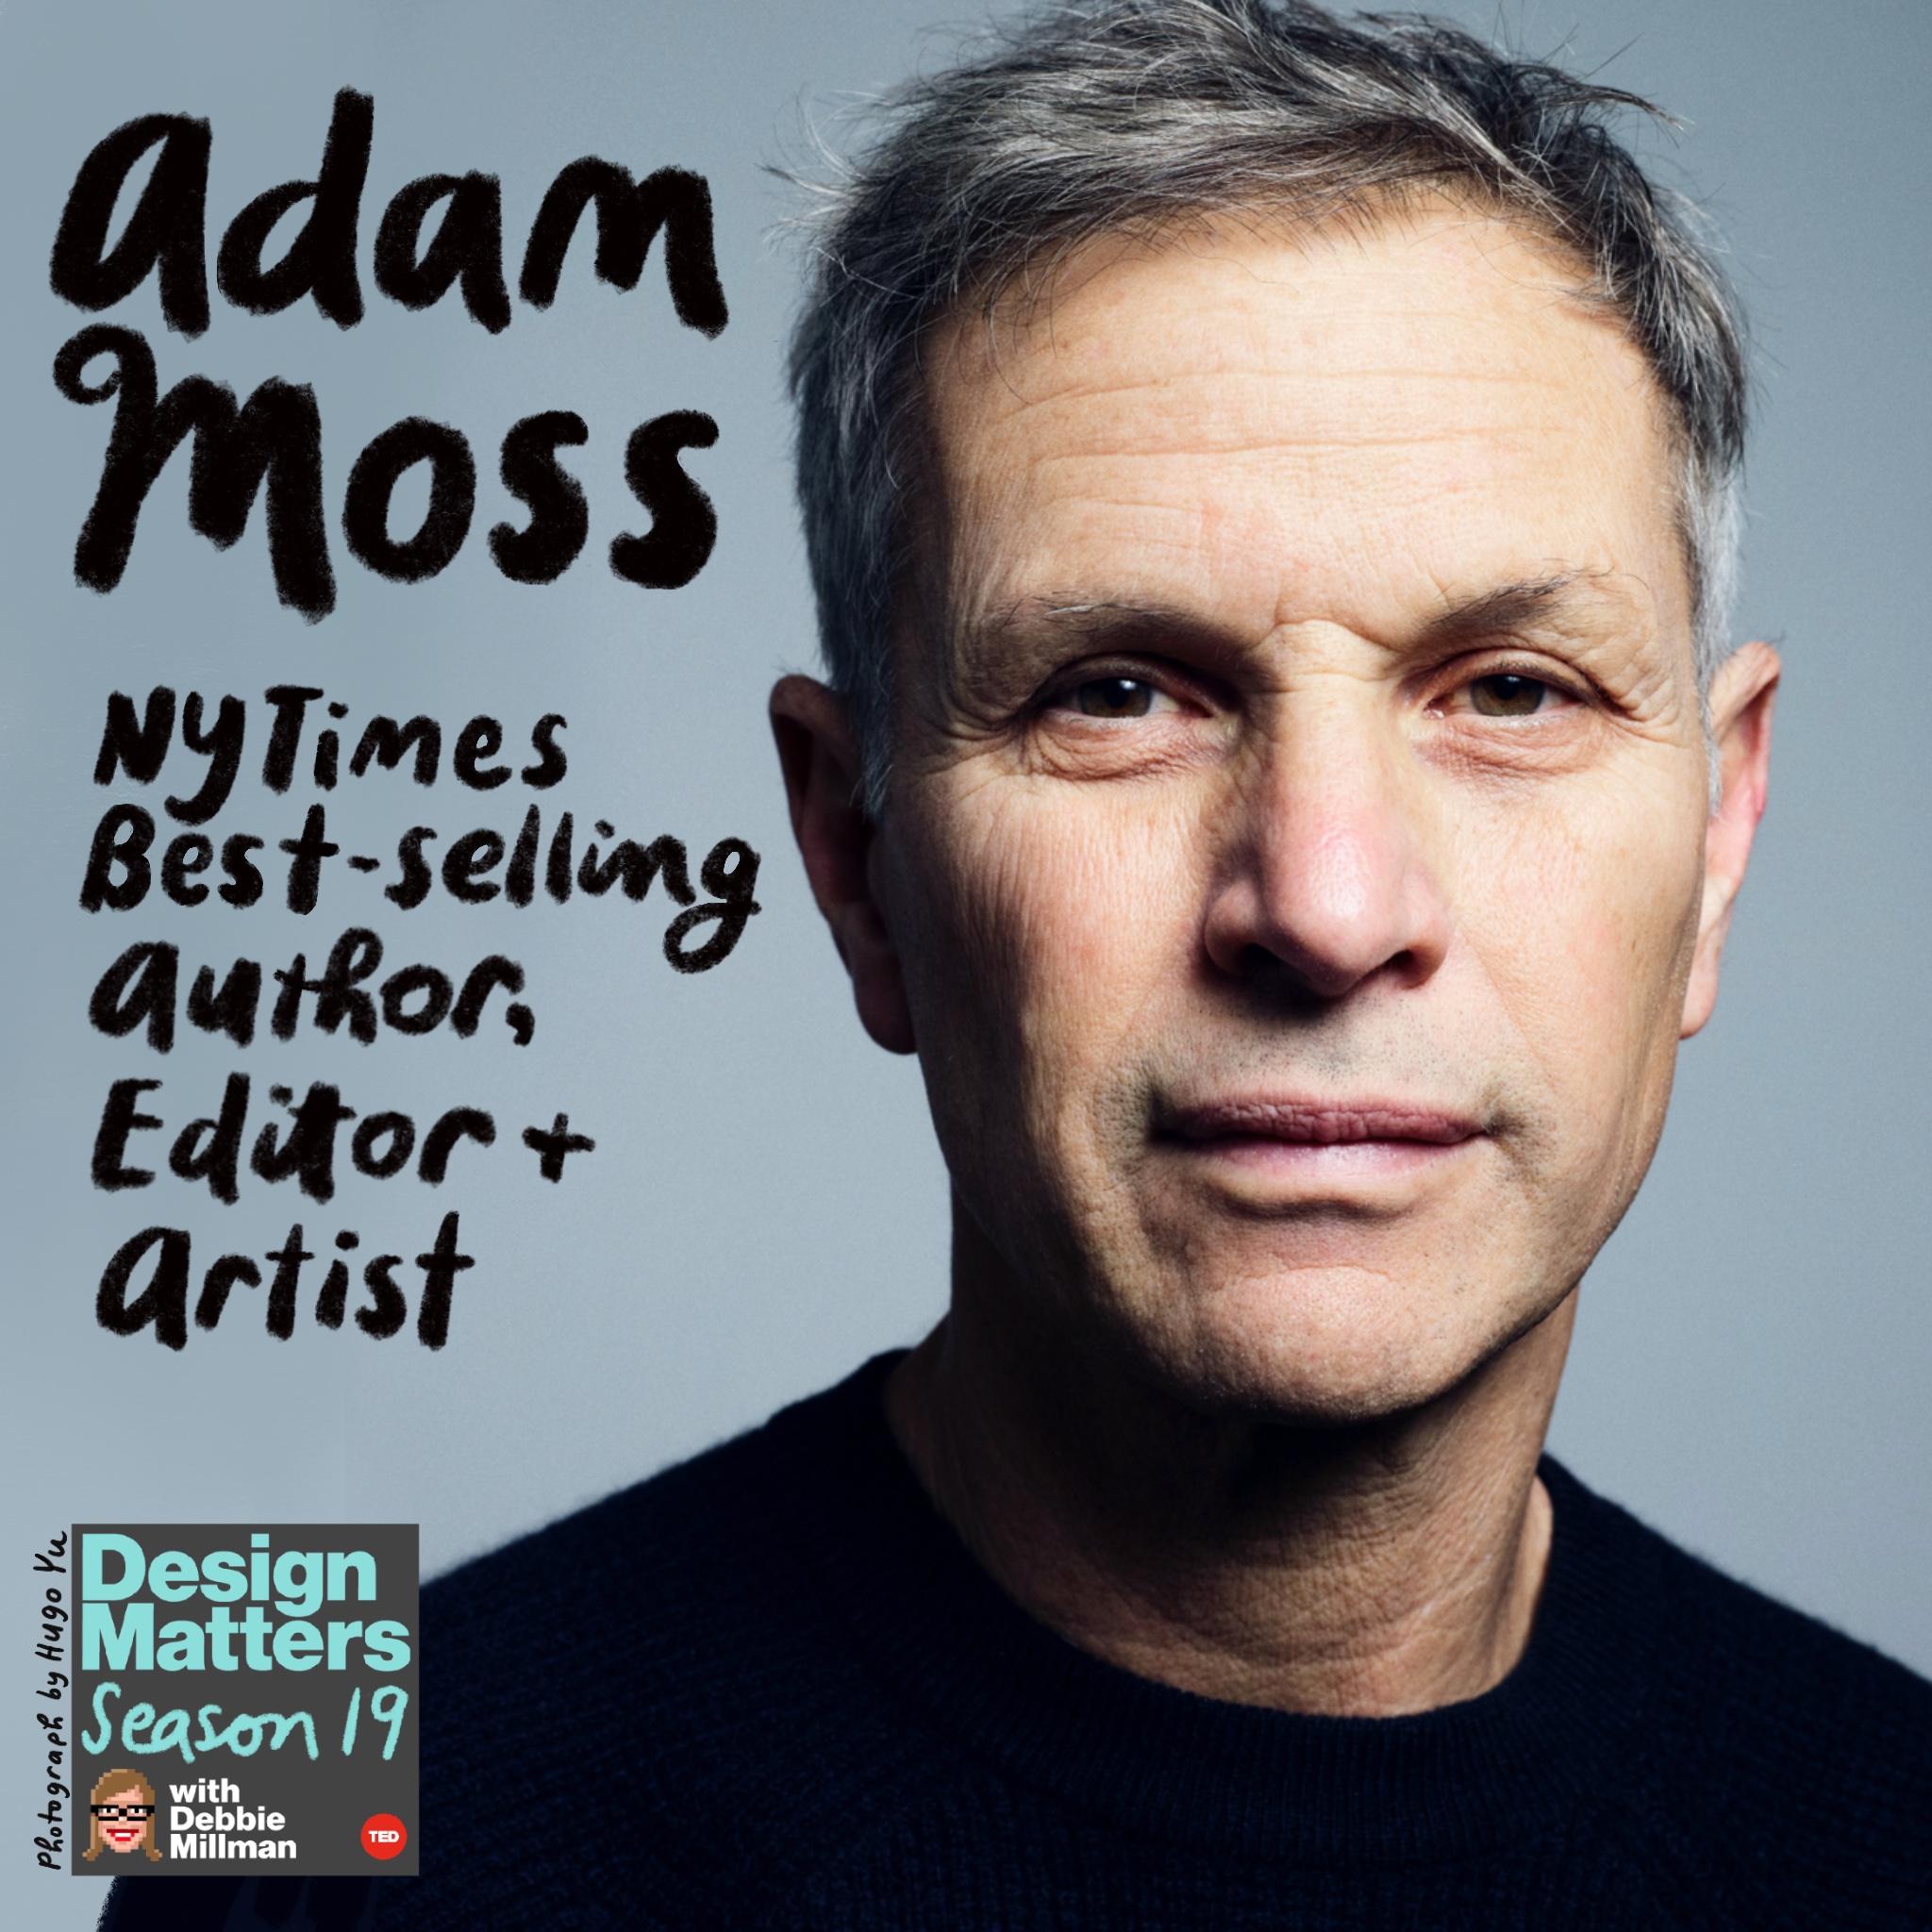 Thumbnail for "Adam Moss".